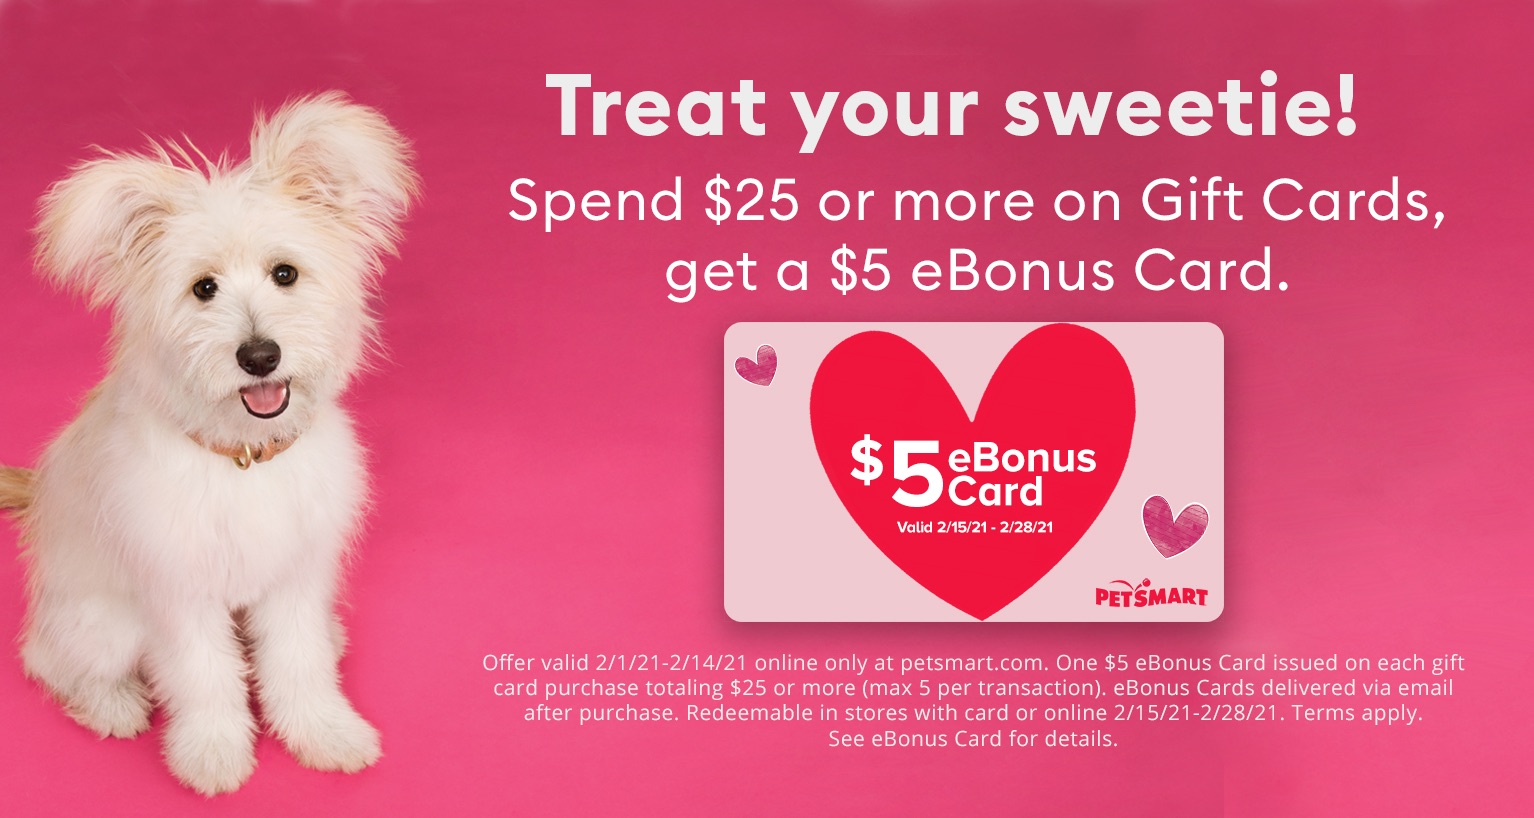 Petsmart 买25刀返5刀 
Gift Cards | PetSmart